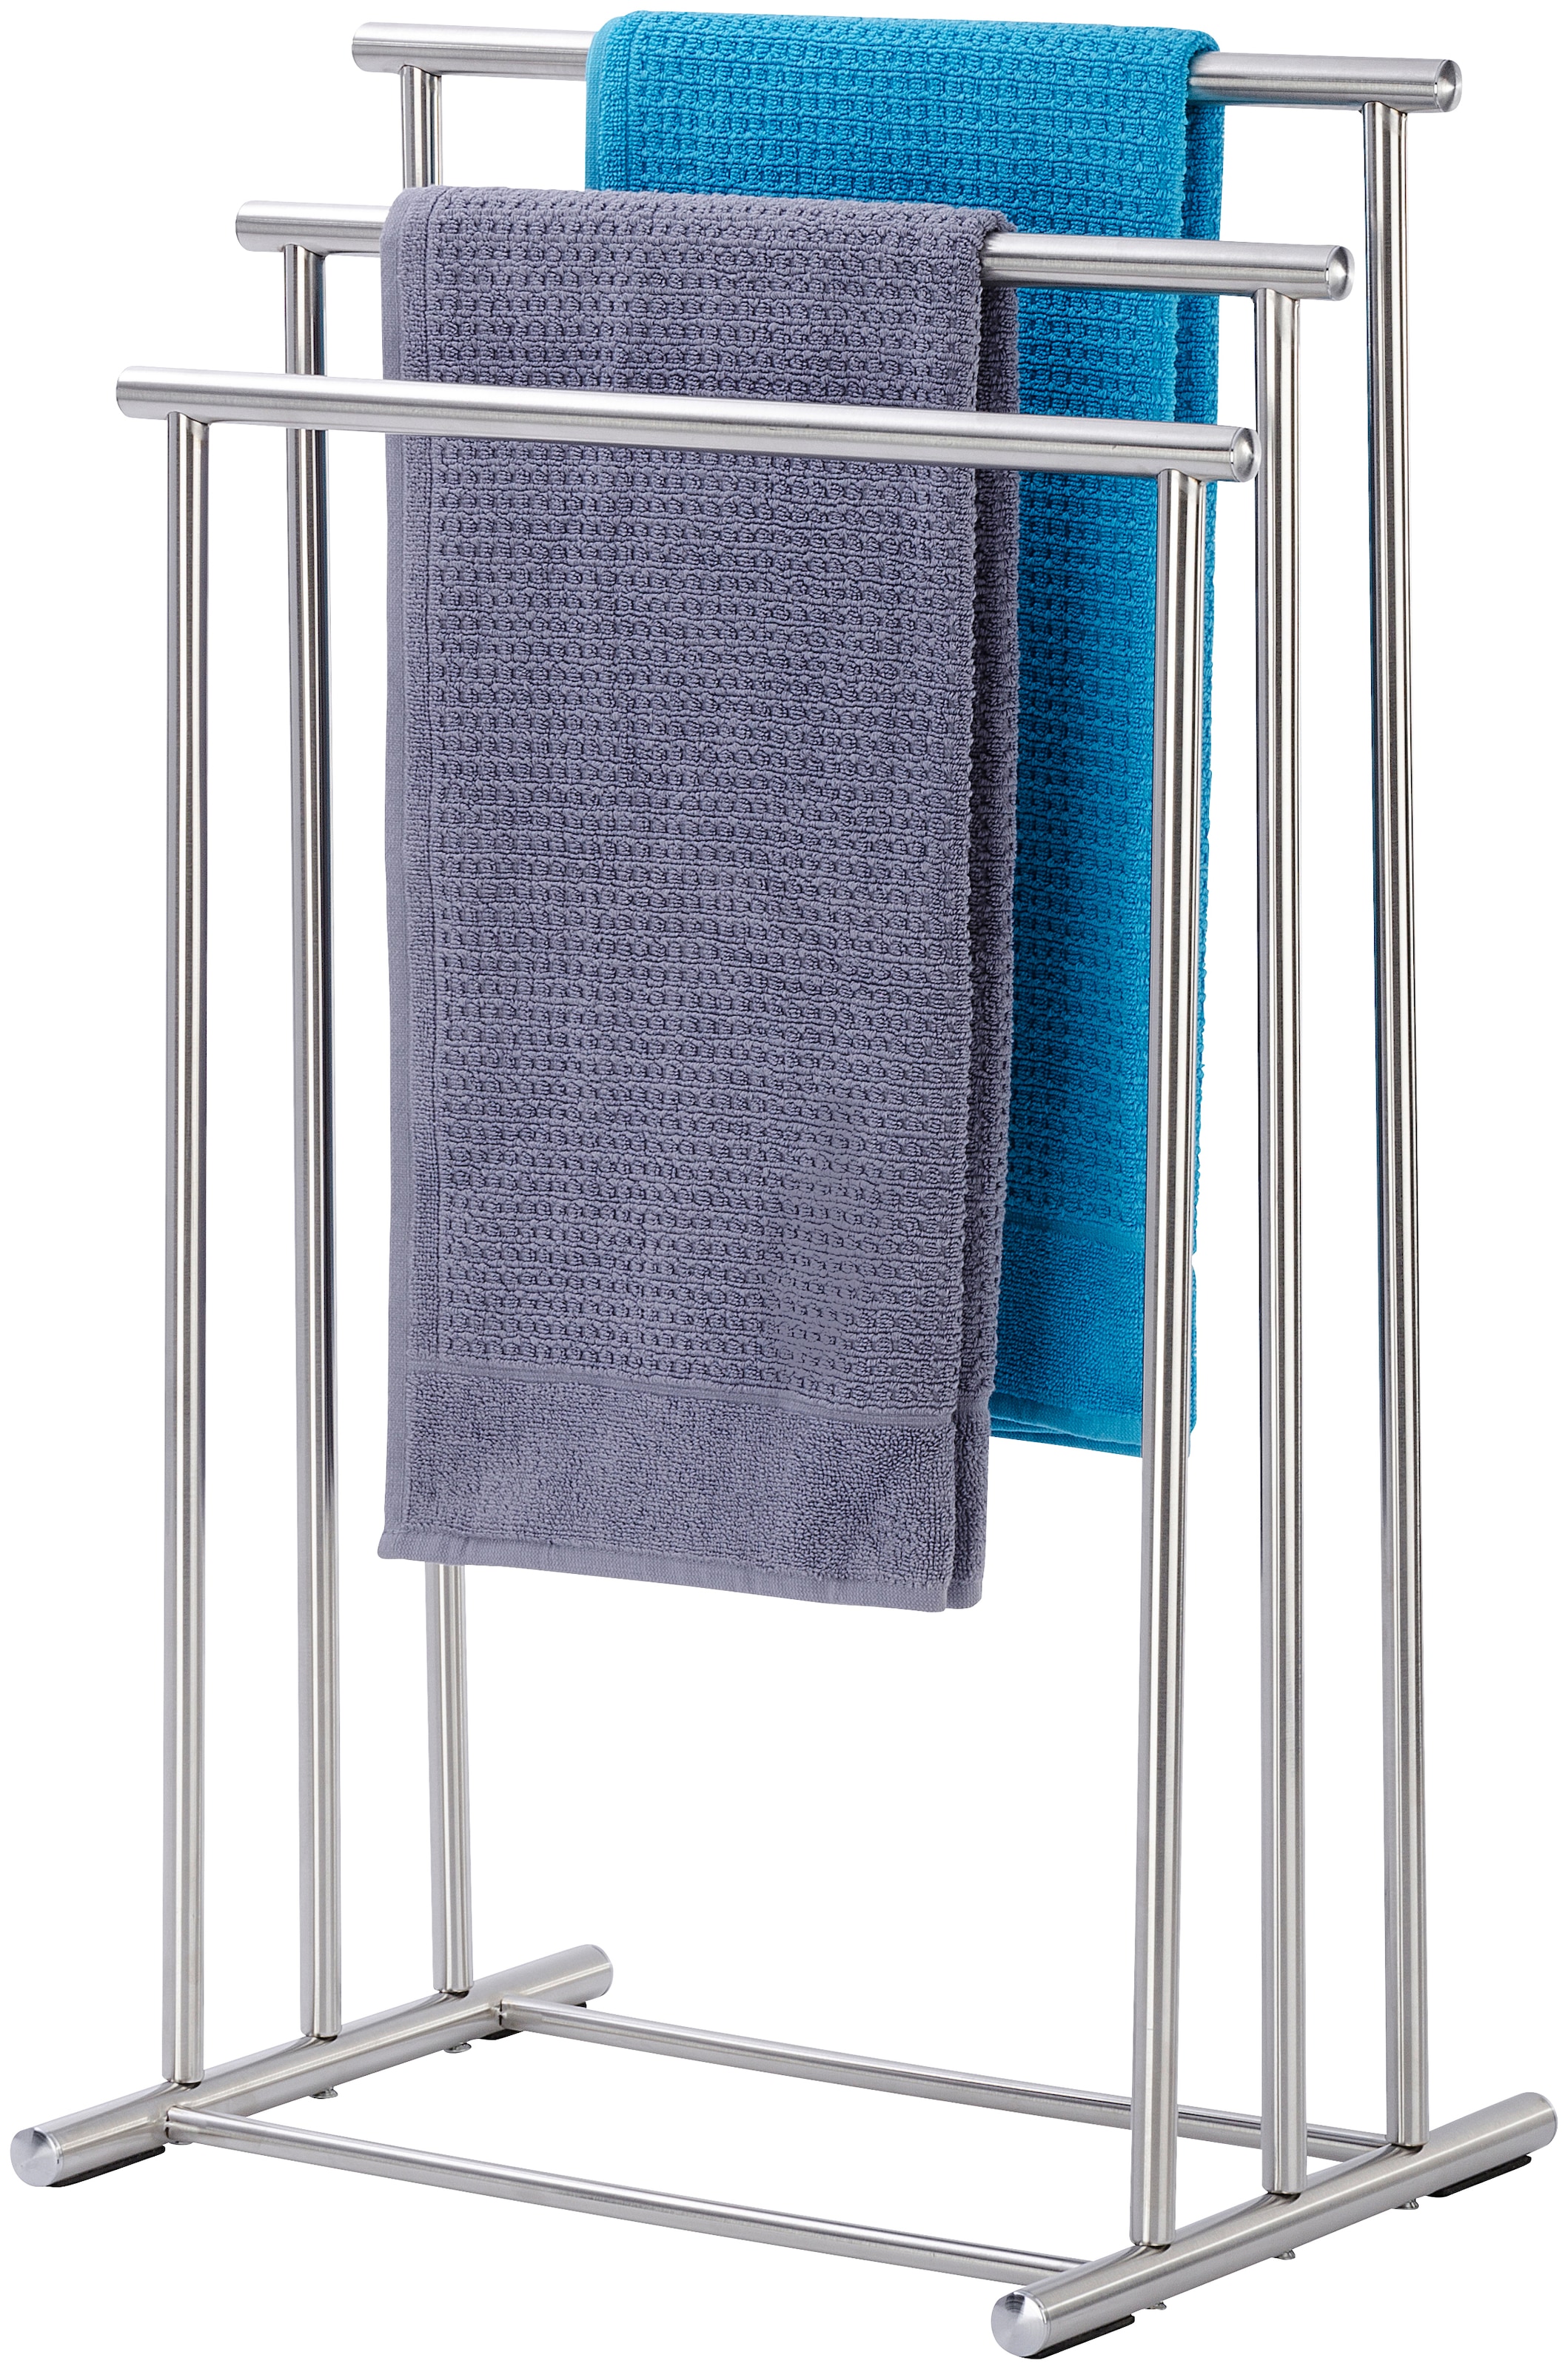 WENKO Handtuchständer »Lioni«, Drei Stangen in stufenförmiger Anordnung  bieten viel Platz für Handtücher oder Kleidungsstücke auf Raten bestellen